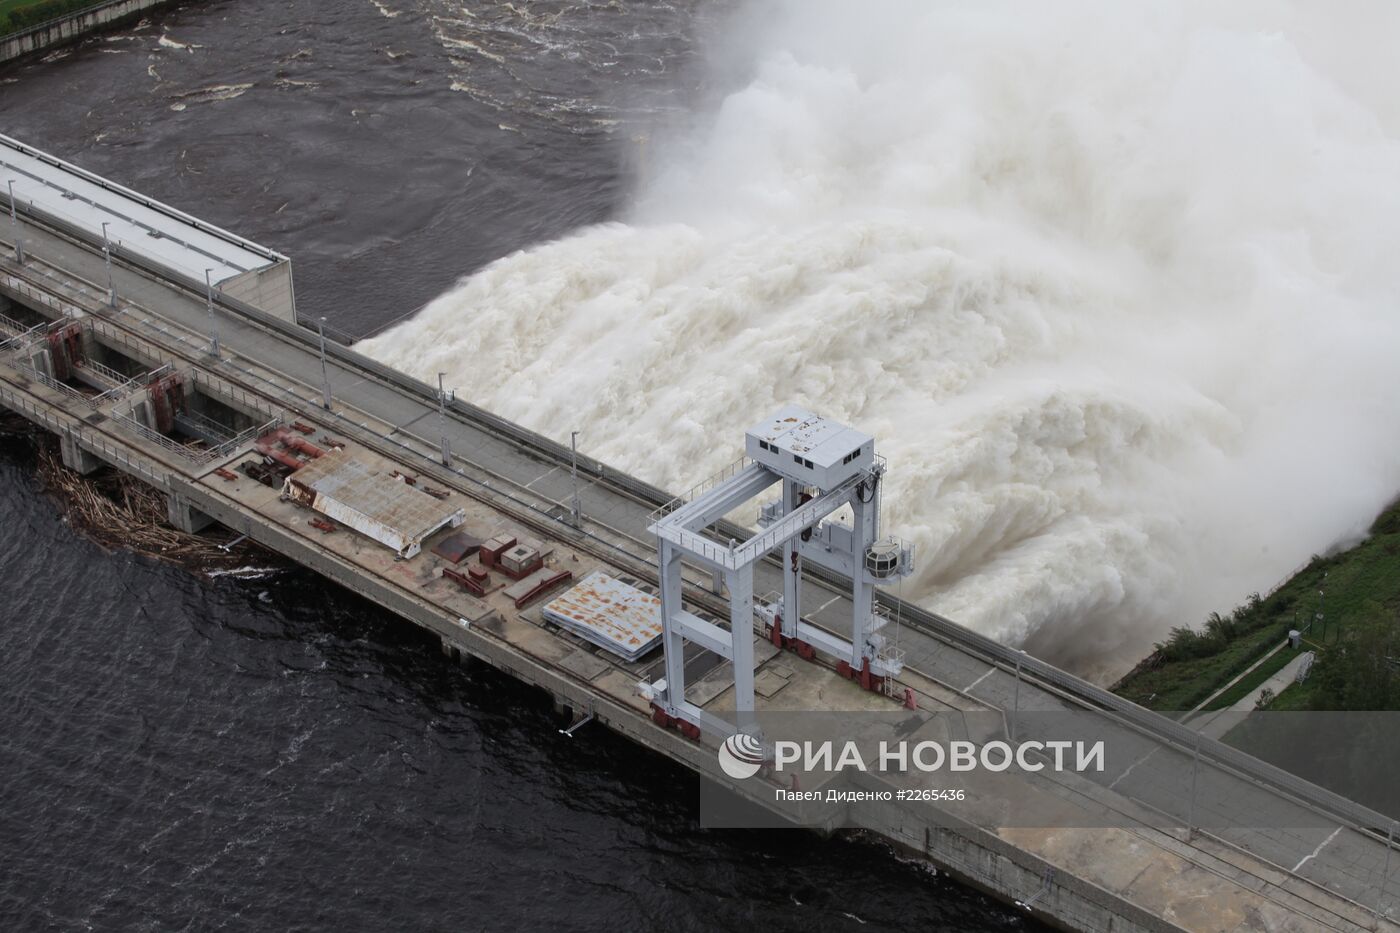 Сброс воды на Зейской ГЭС в Амурской области